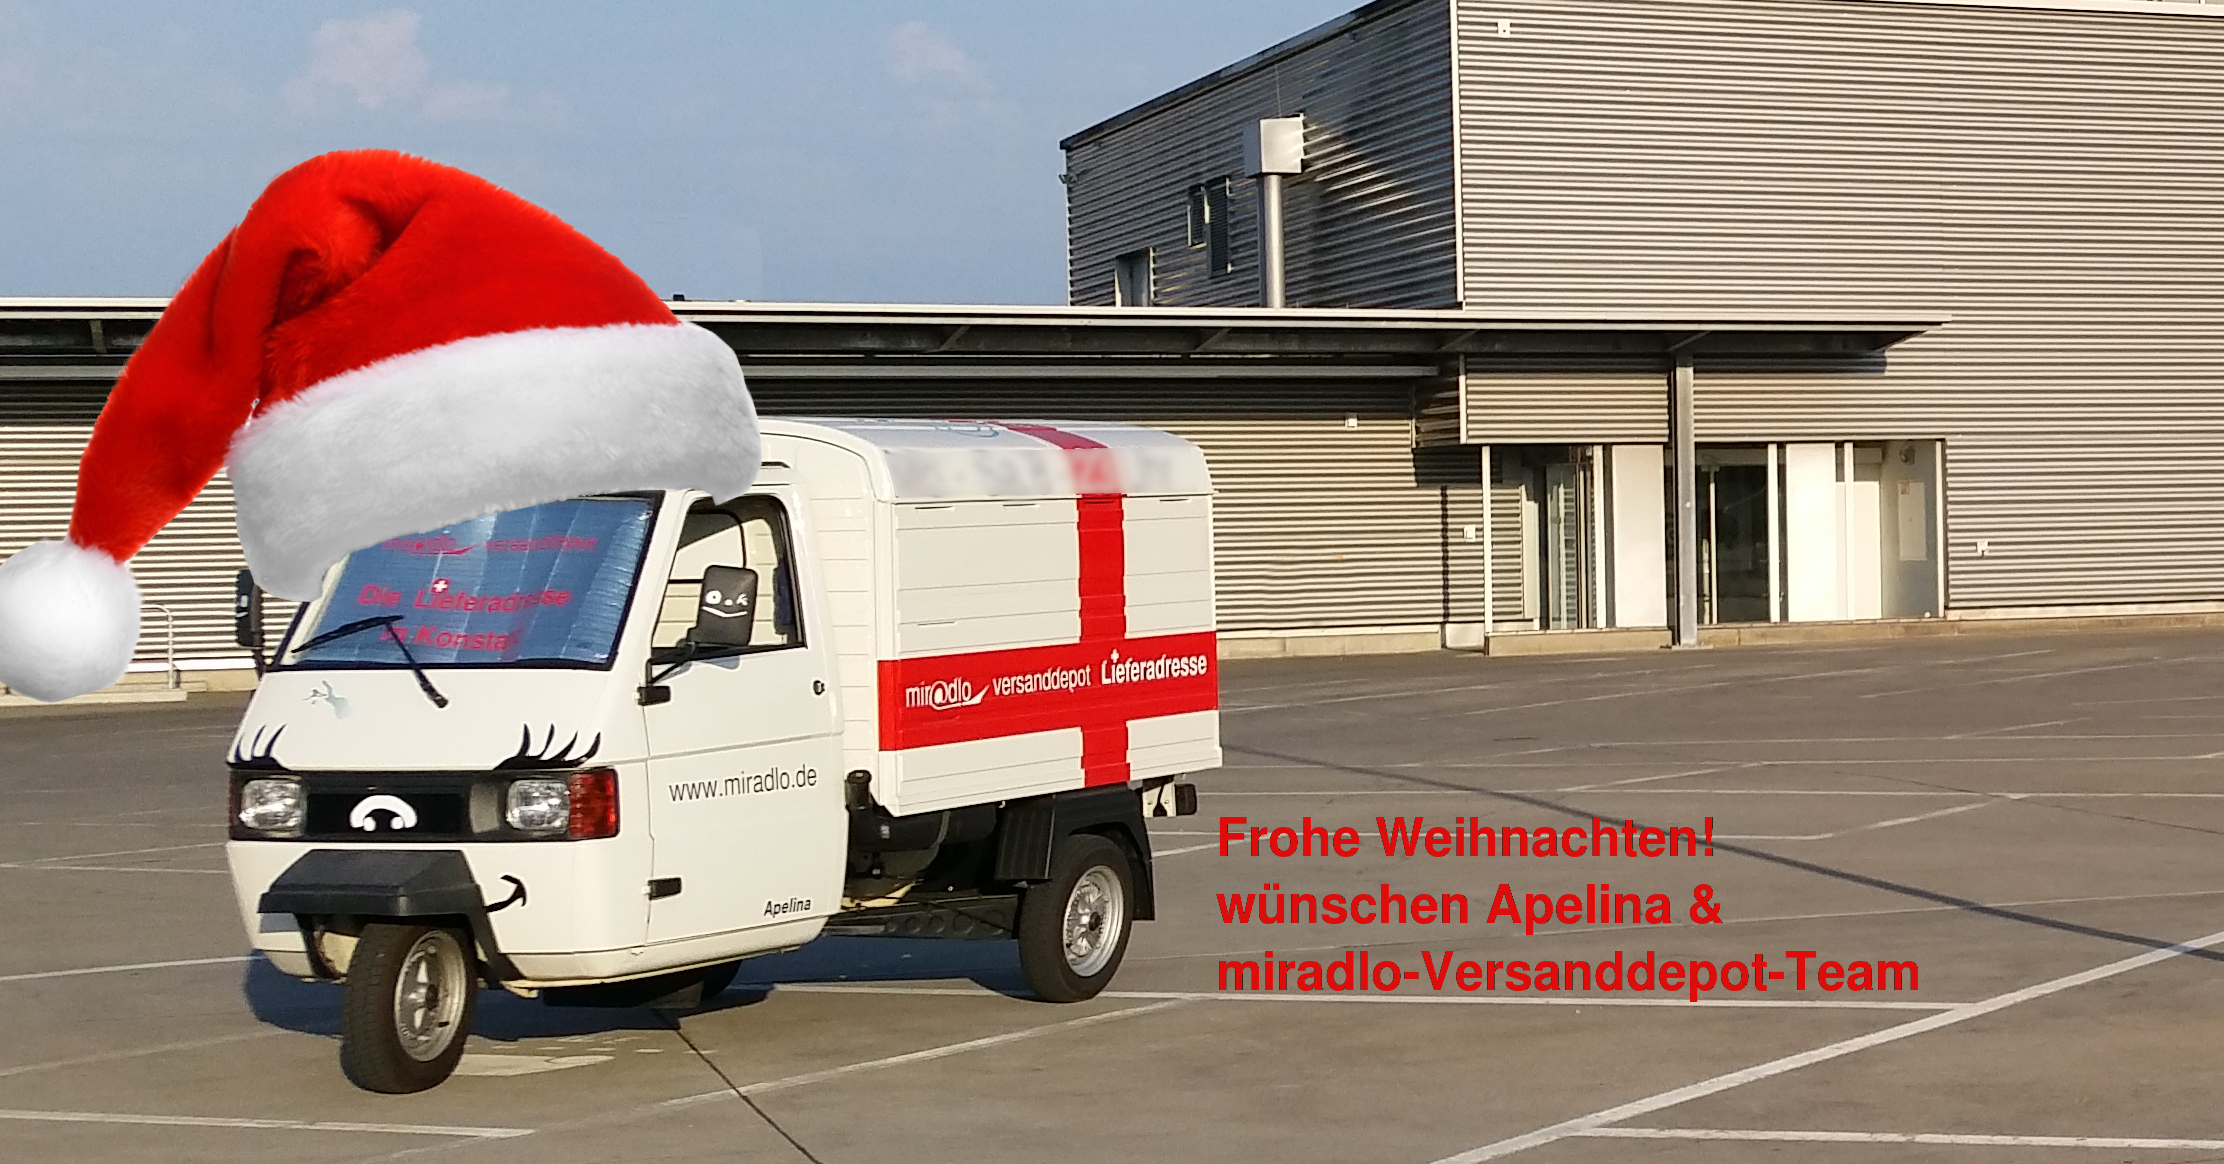 Frohe Weihnachten wünschen Apelina und das miradlo-Versanddepot-Team, mit Weihnachtsmützen-Apelina